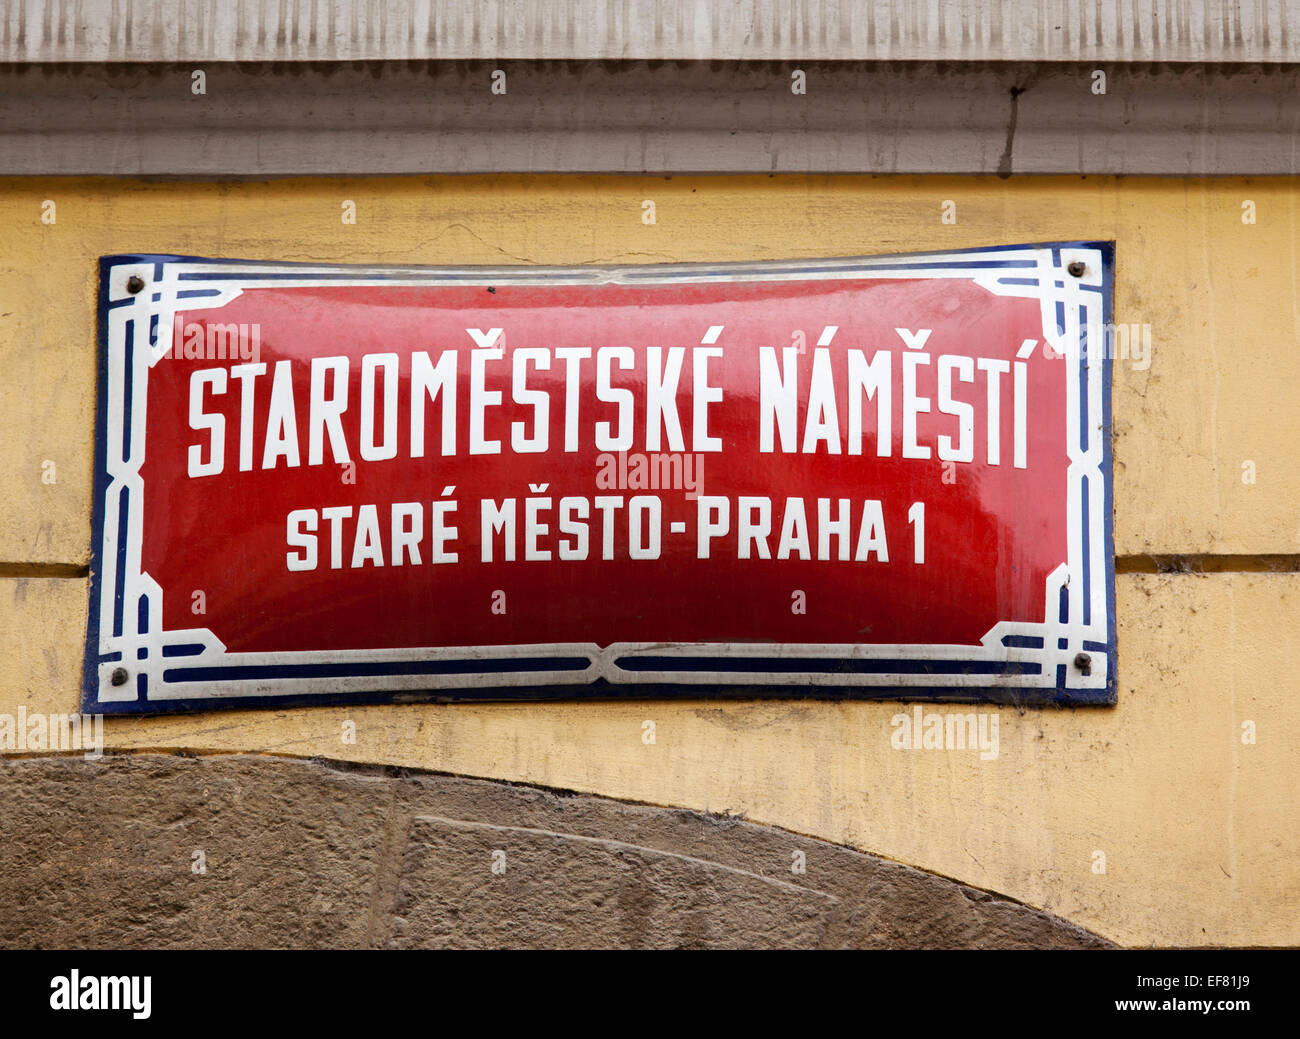 Staromestske Namesti nameplate, Old town, Prague Stock Photo